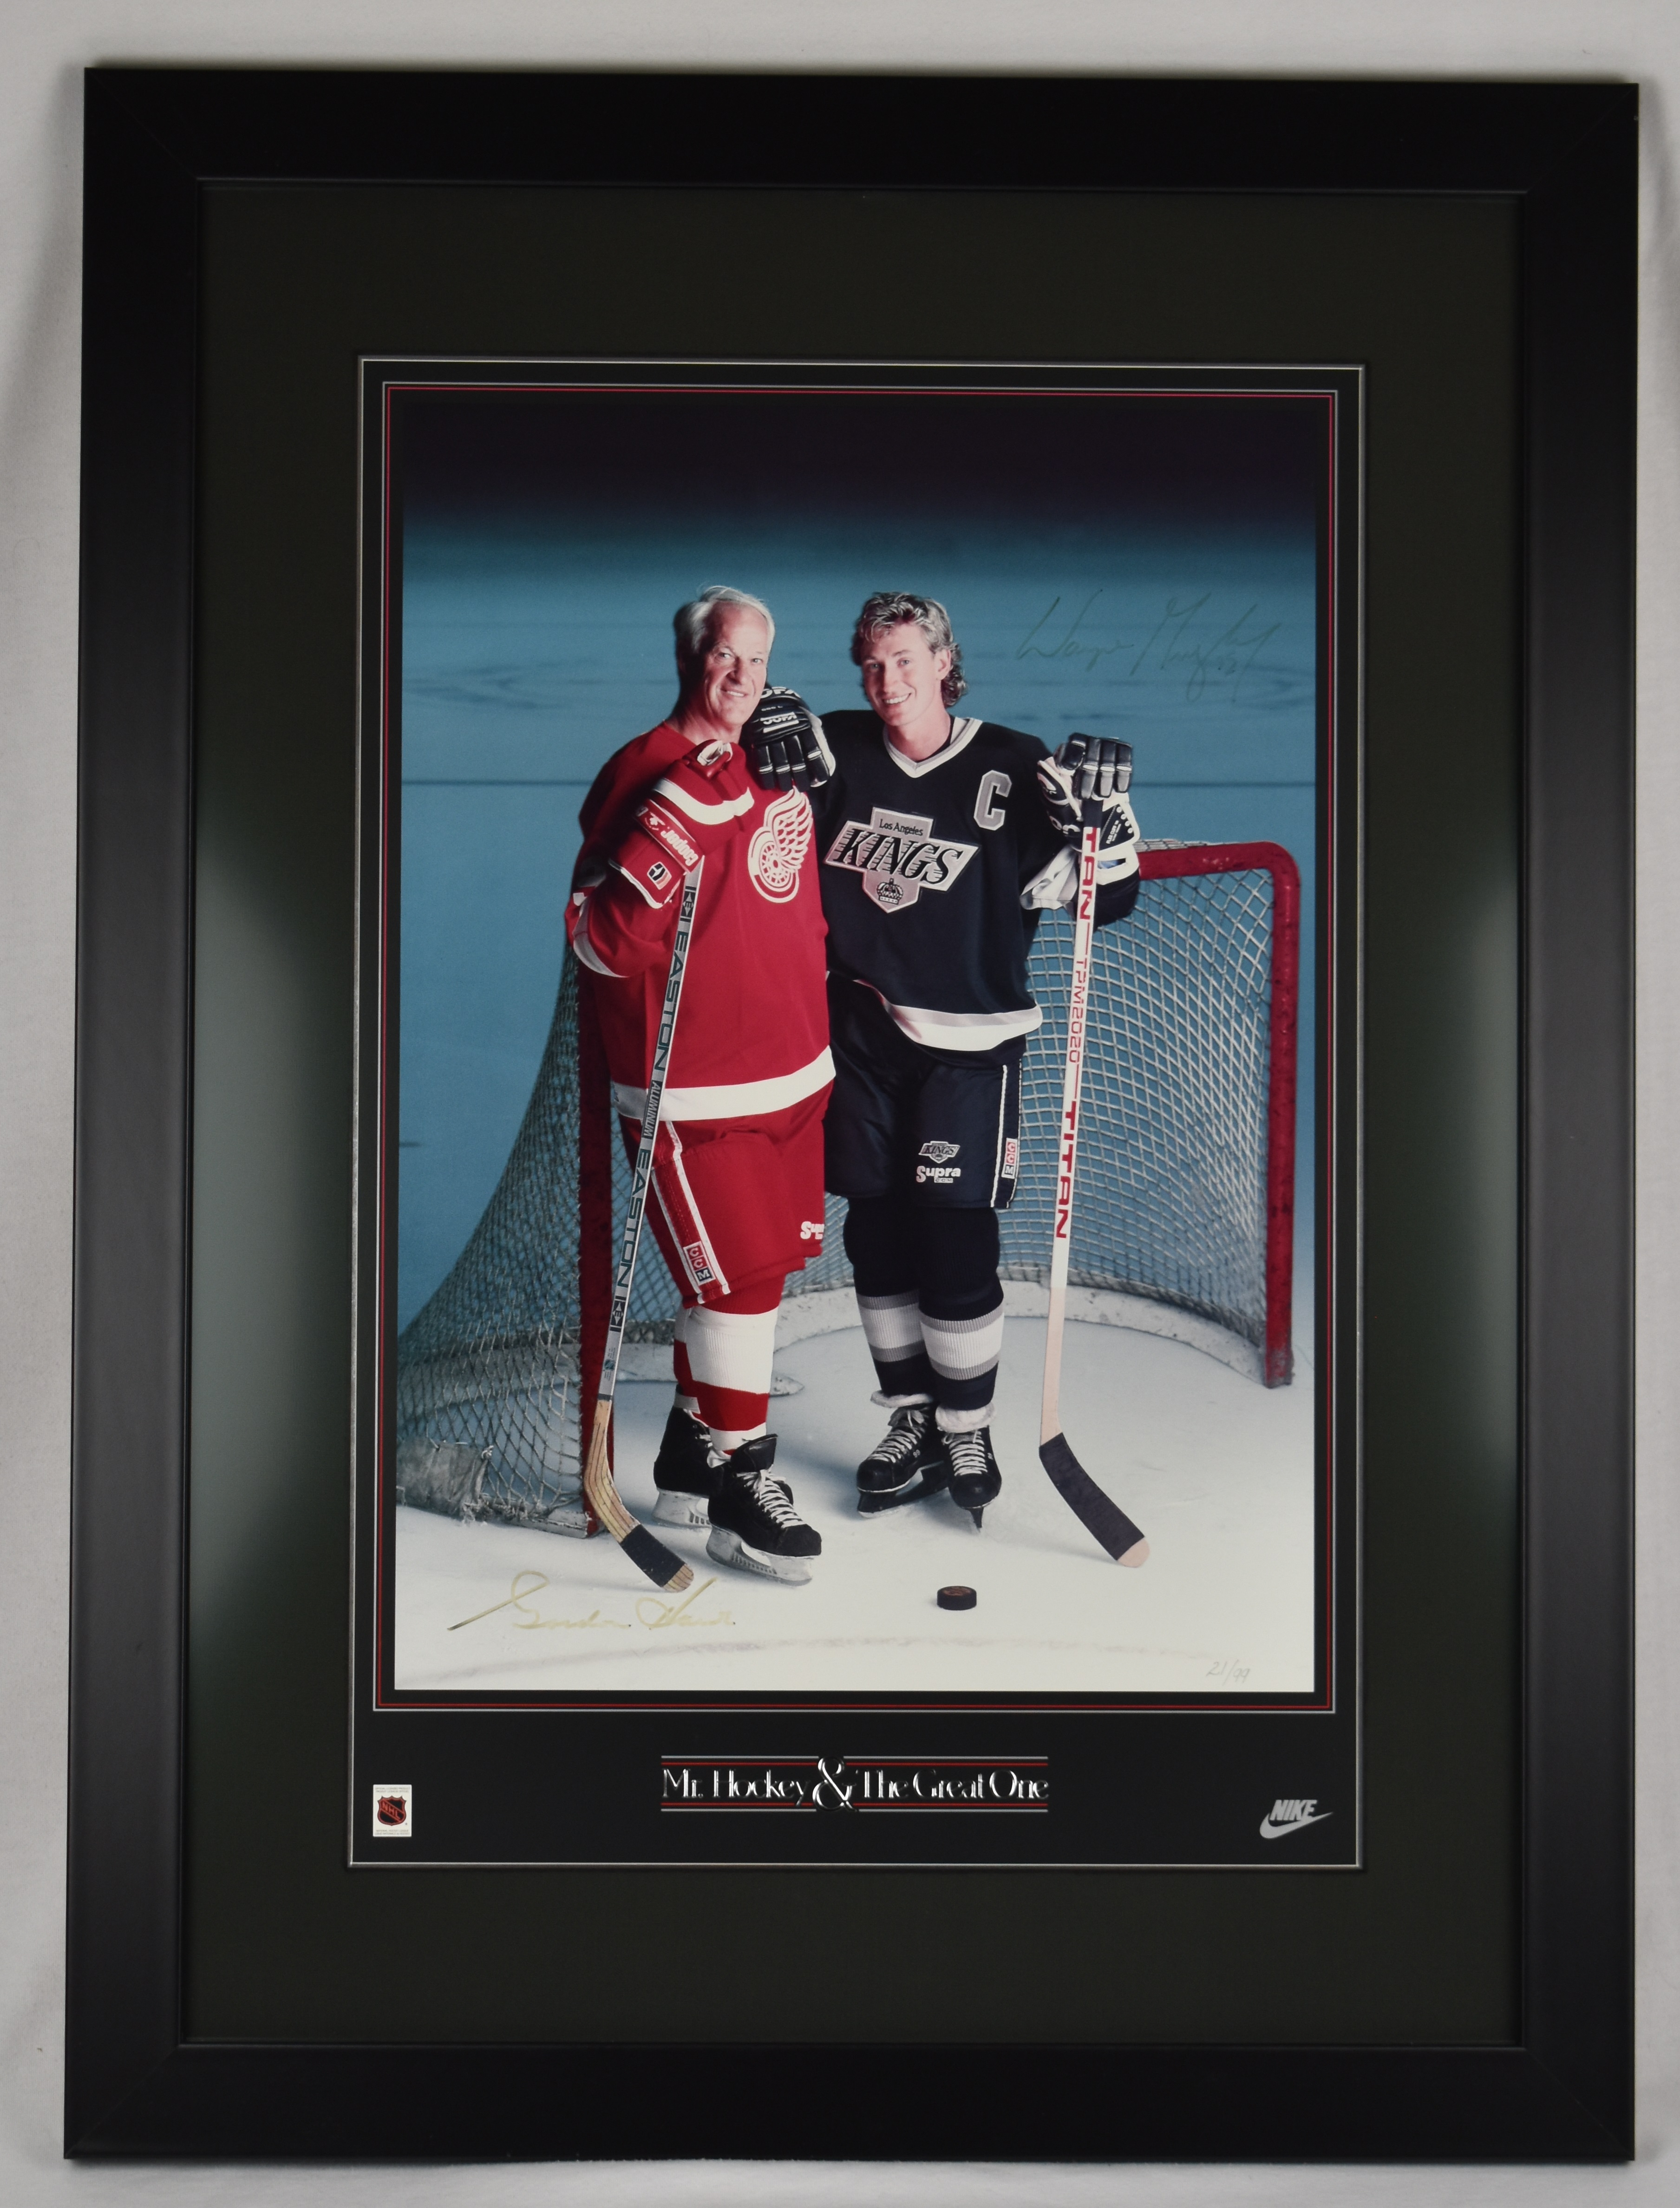 Hockey Beast - Wayne Gretzky and Gordie Howe on the same line